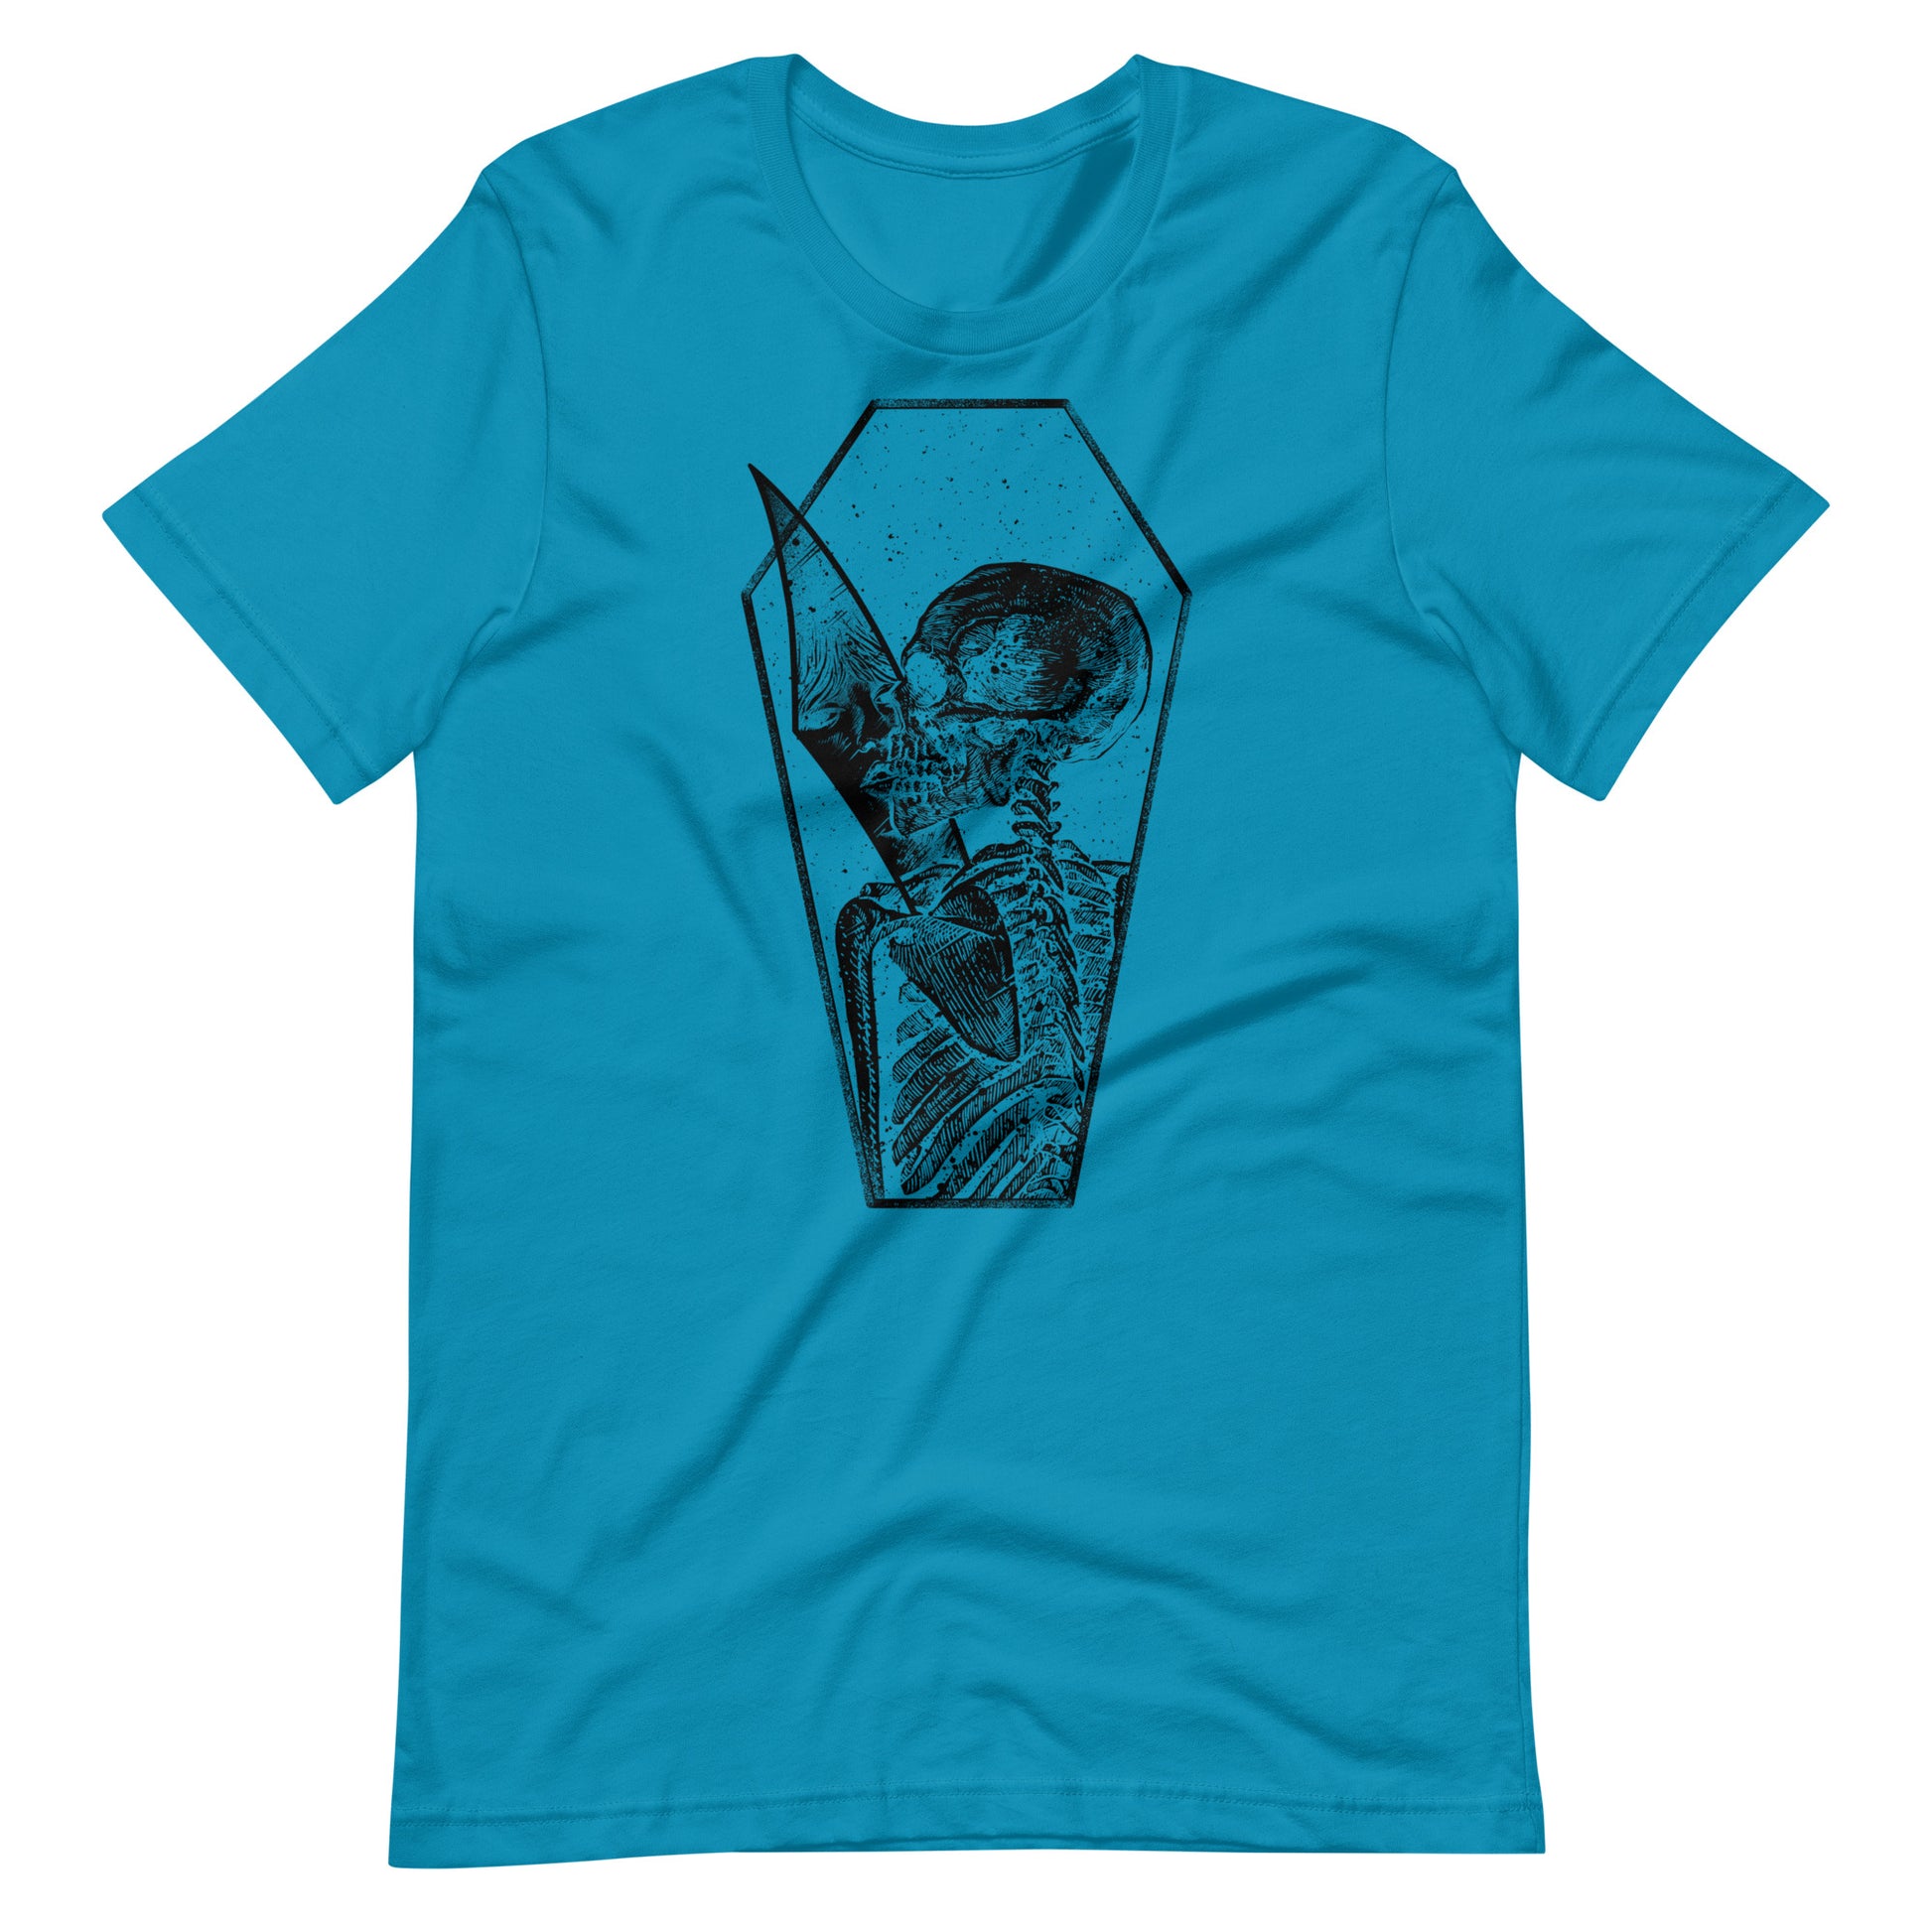 Shadow of Memories Black - Men's t-shirt - Aqua Front